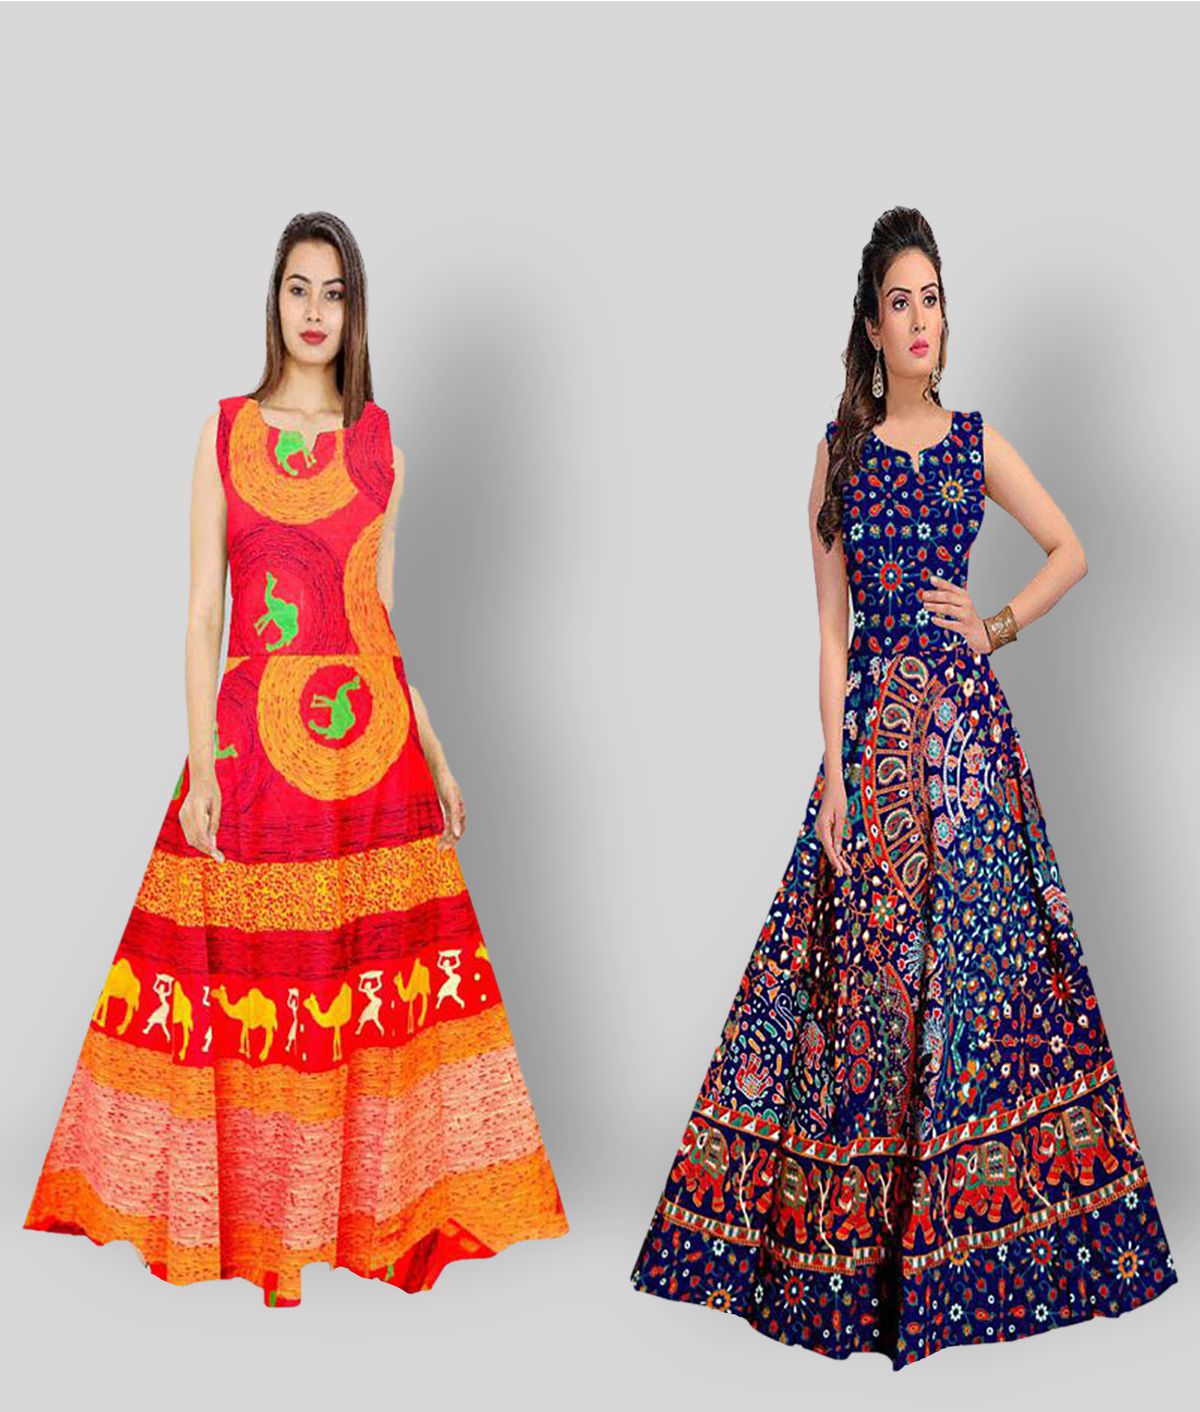     			Rangun - Multicolor Cotton Women's A-line Dress ( Pack of 2 )